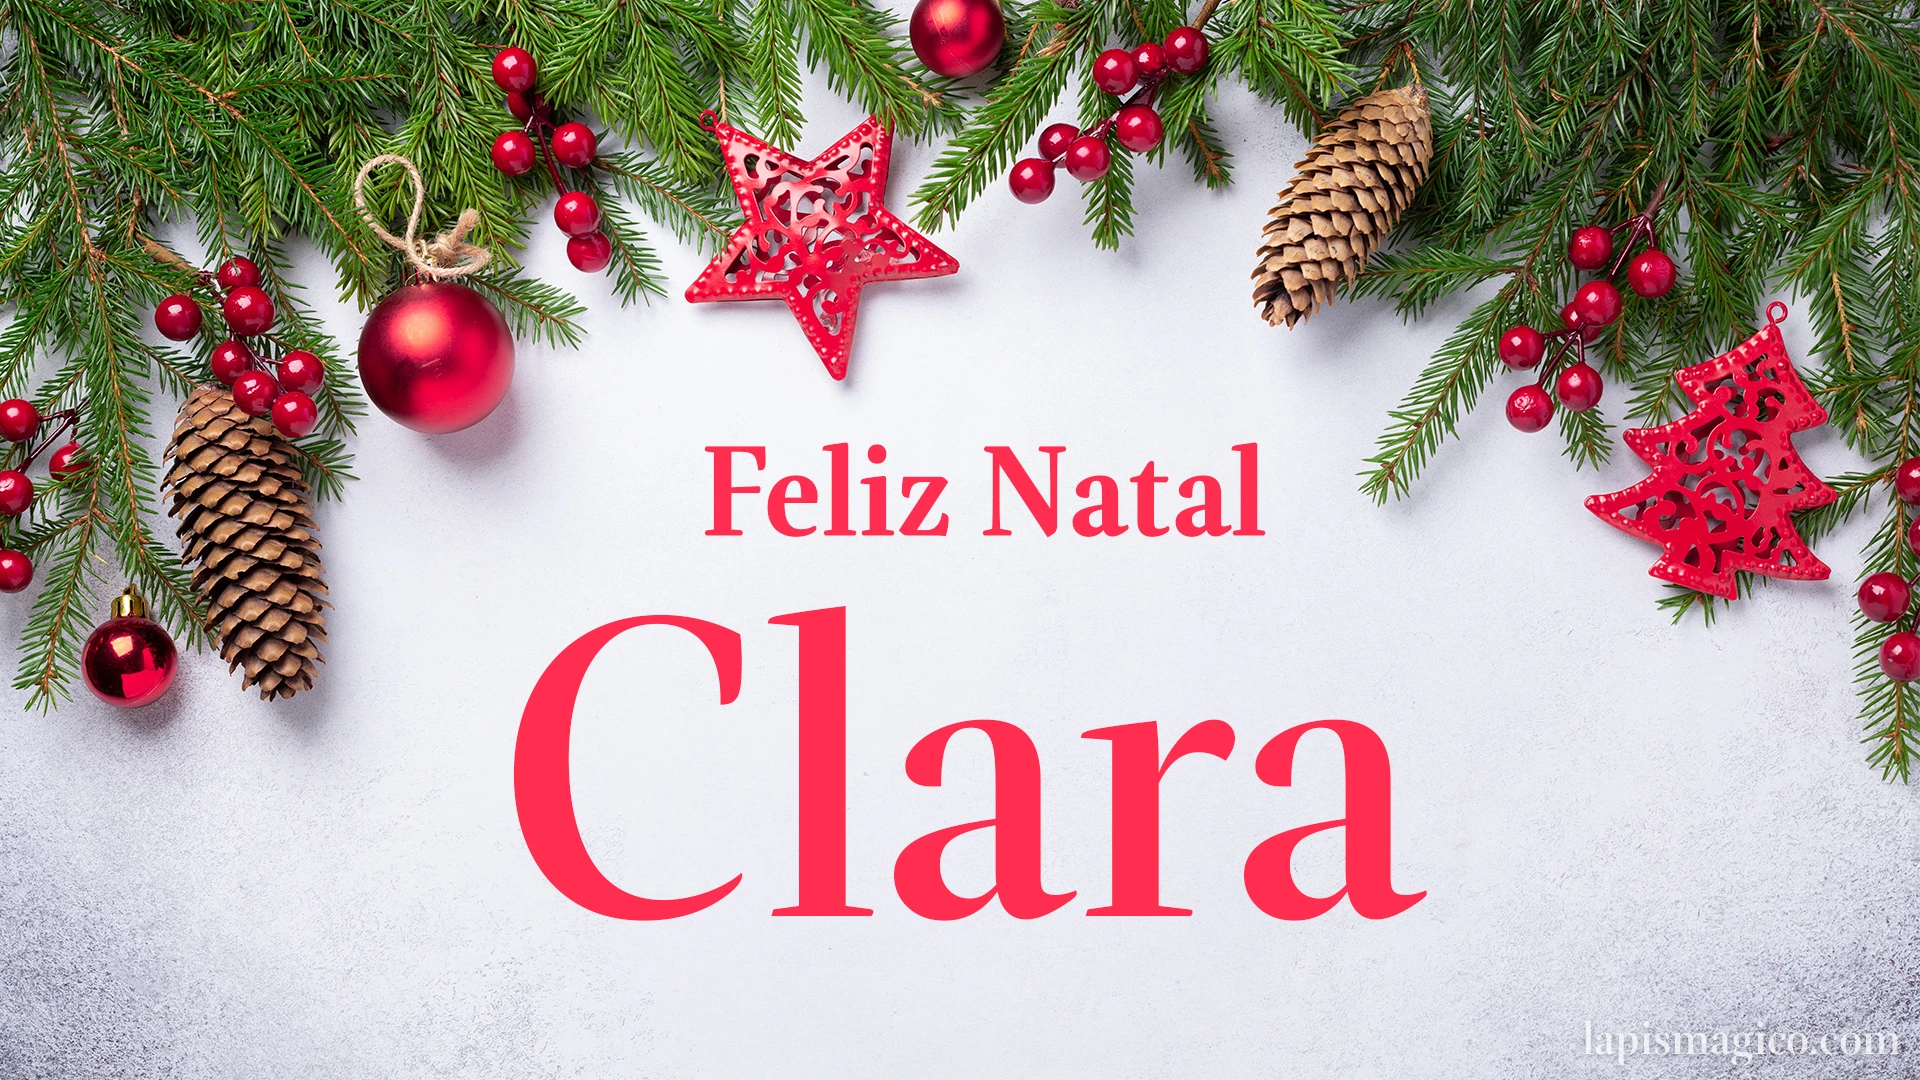 Oh Clara, cinco postais de Feliz Natal Postal com o teu nome